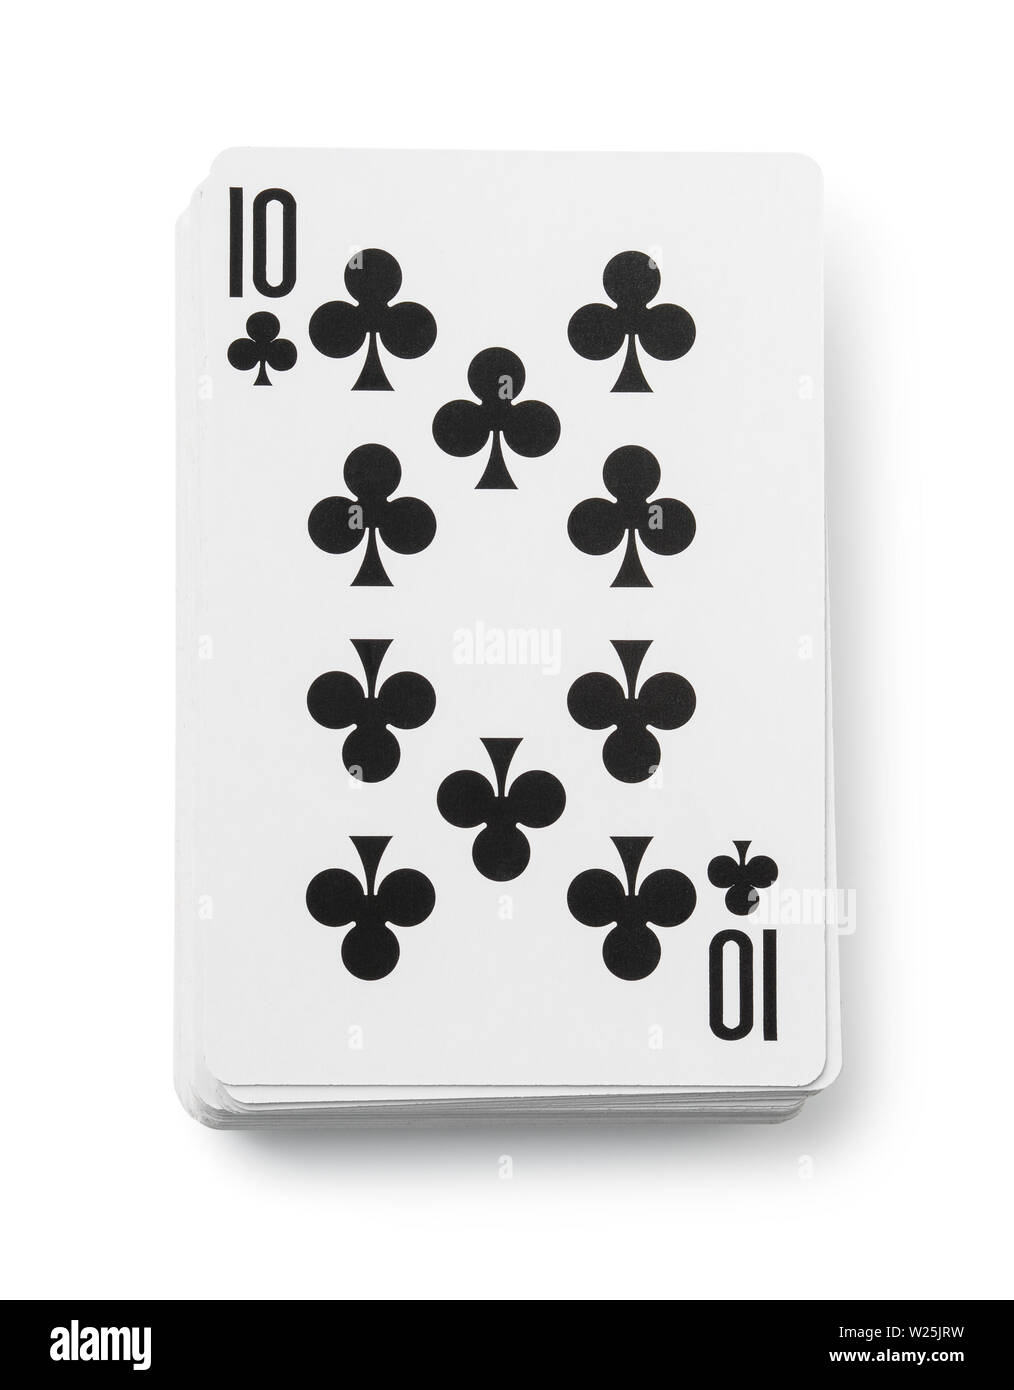 Des jeux de cartes isolated on white Banque D'Images